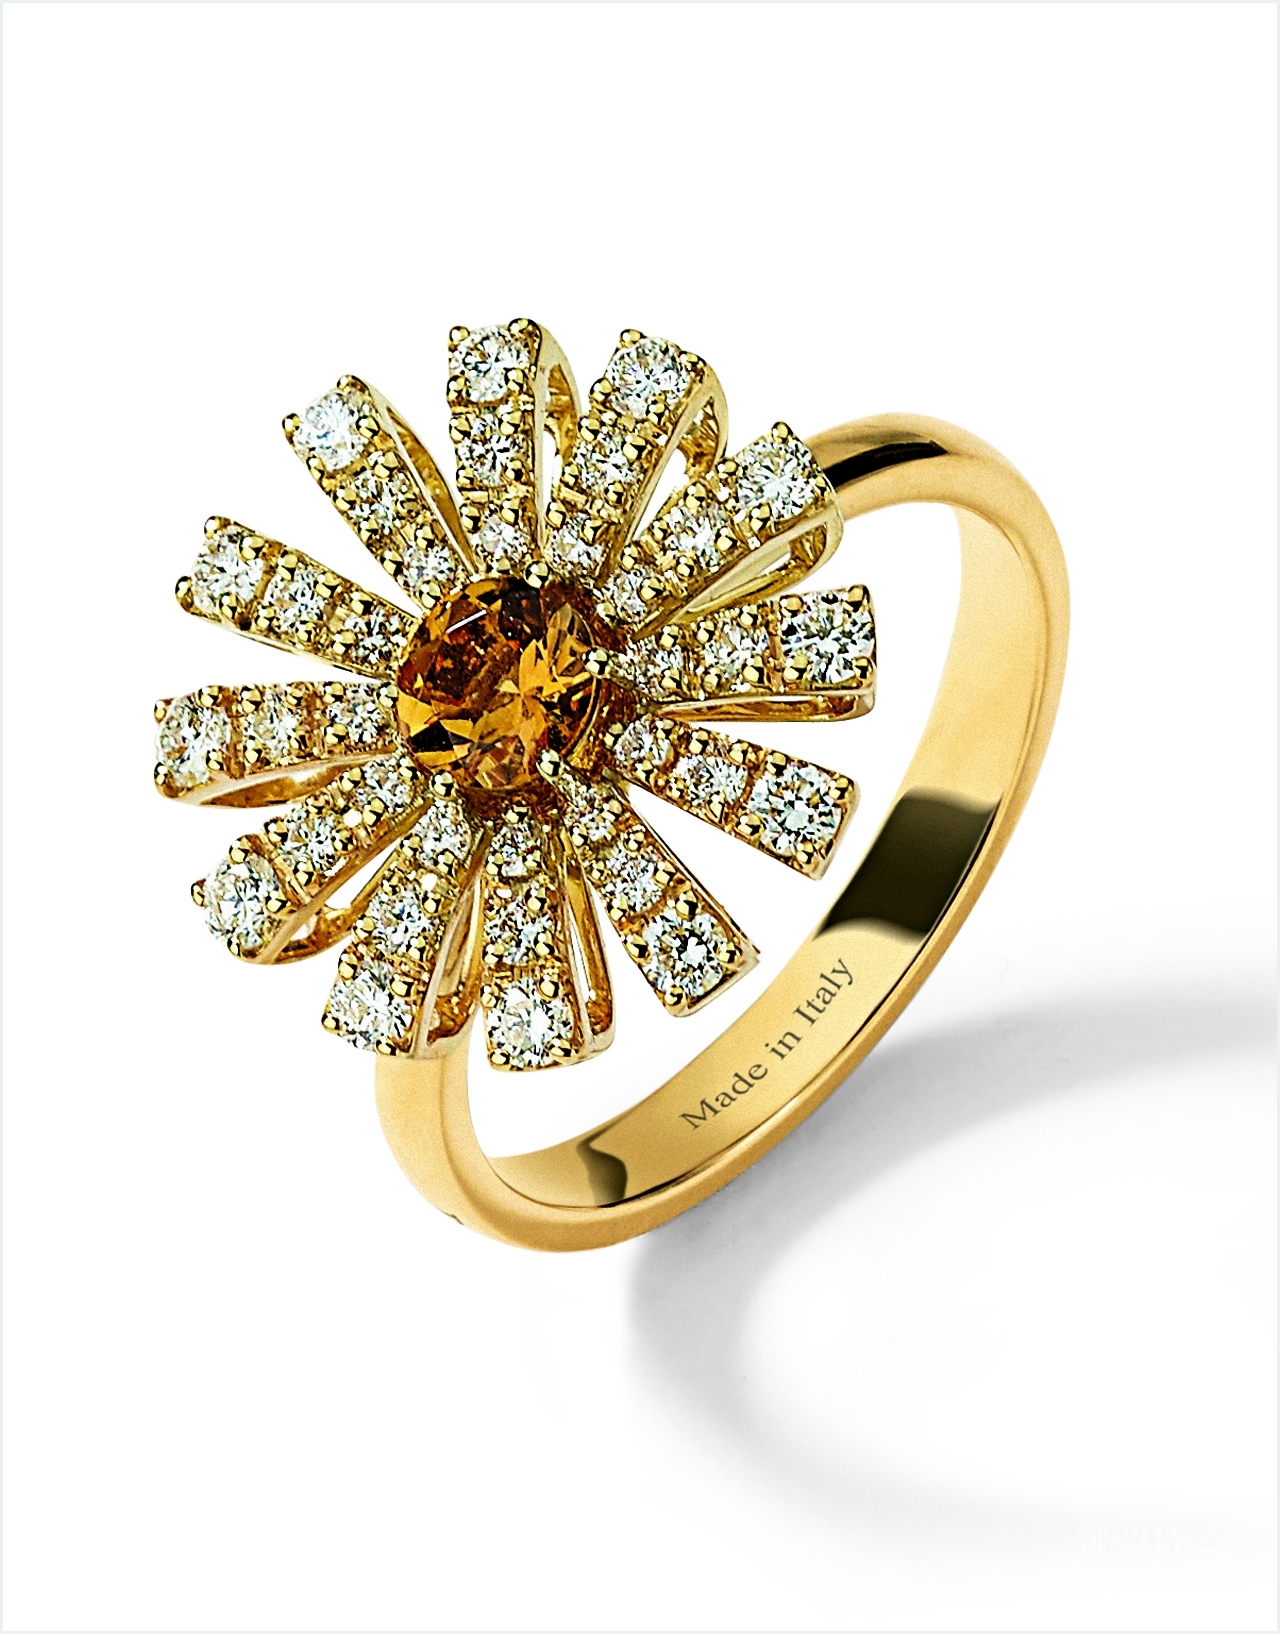 사진 : 다미아니, Margherita ring in yellow gold, diamonds and citrine quartz